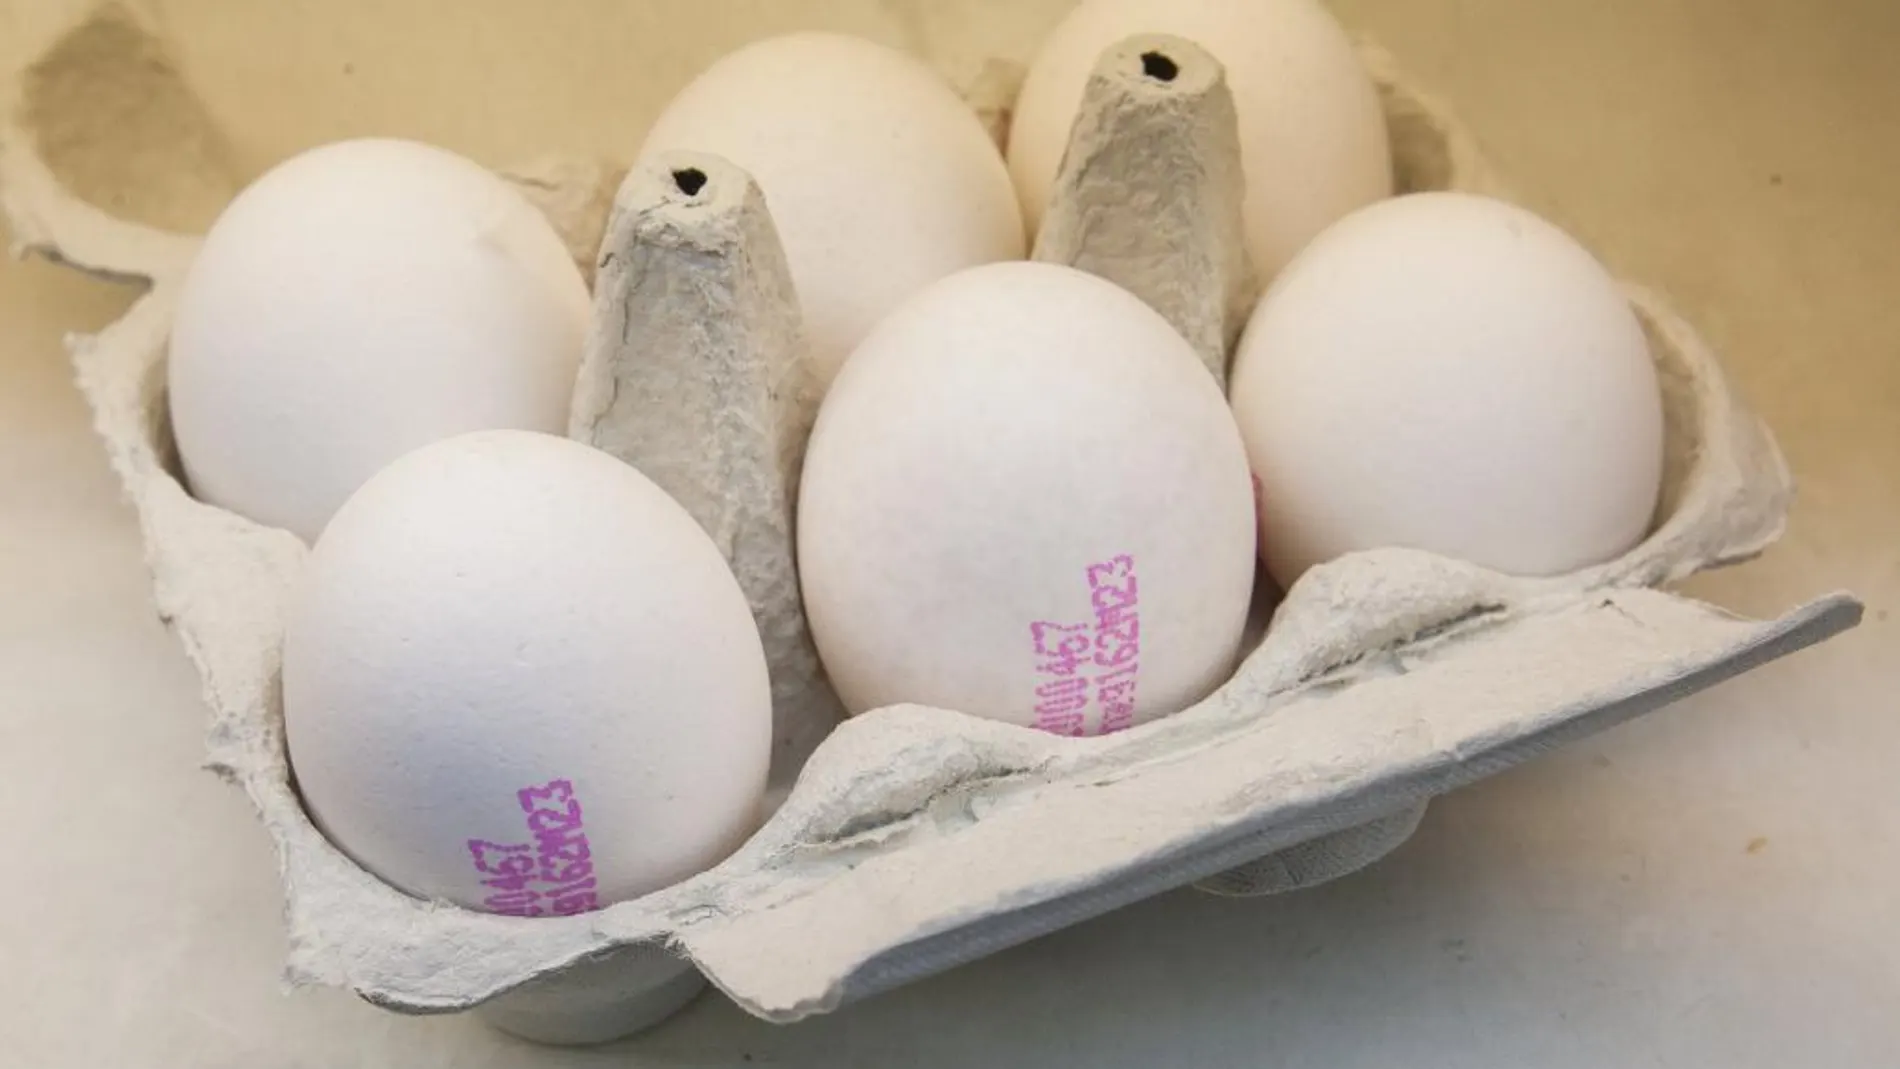 España sigue sin estar afectada por la distribución de huevos contaminados